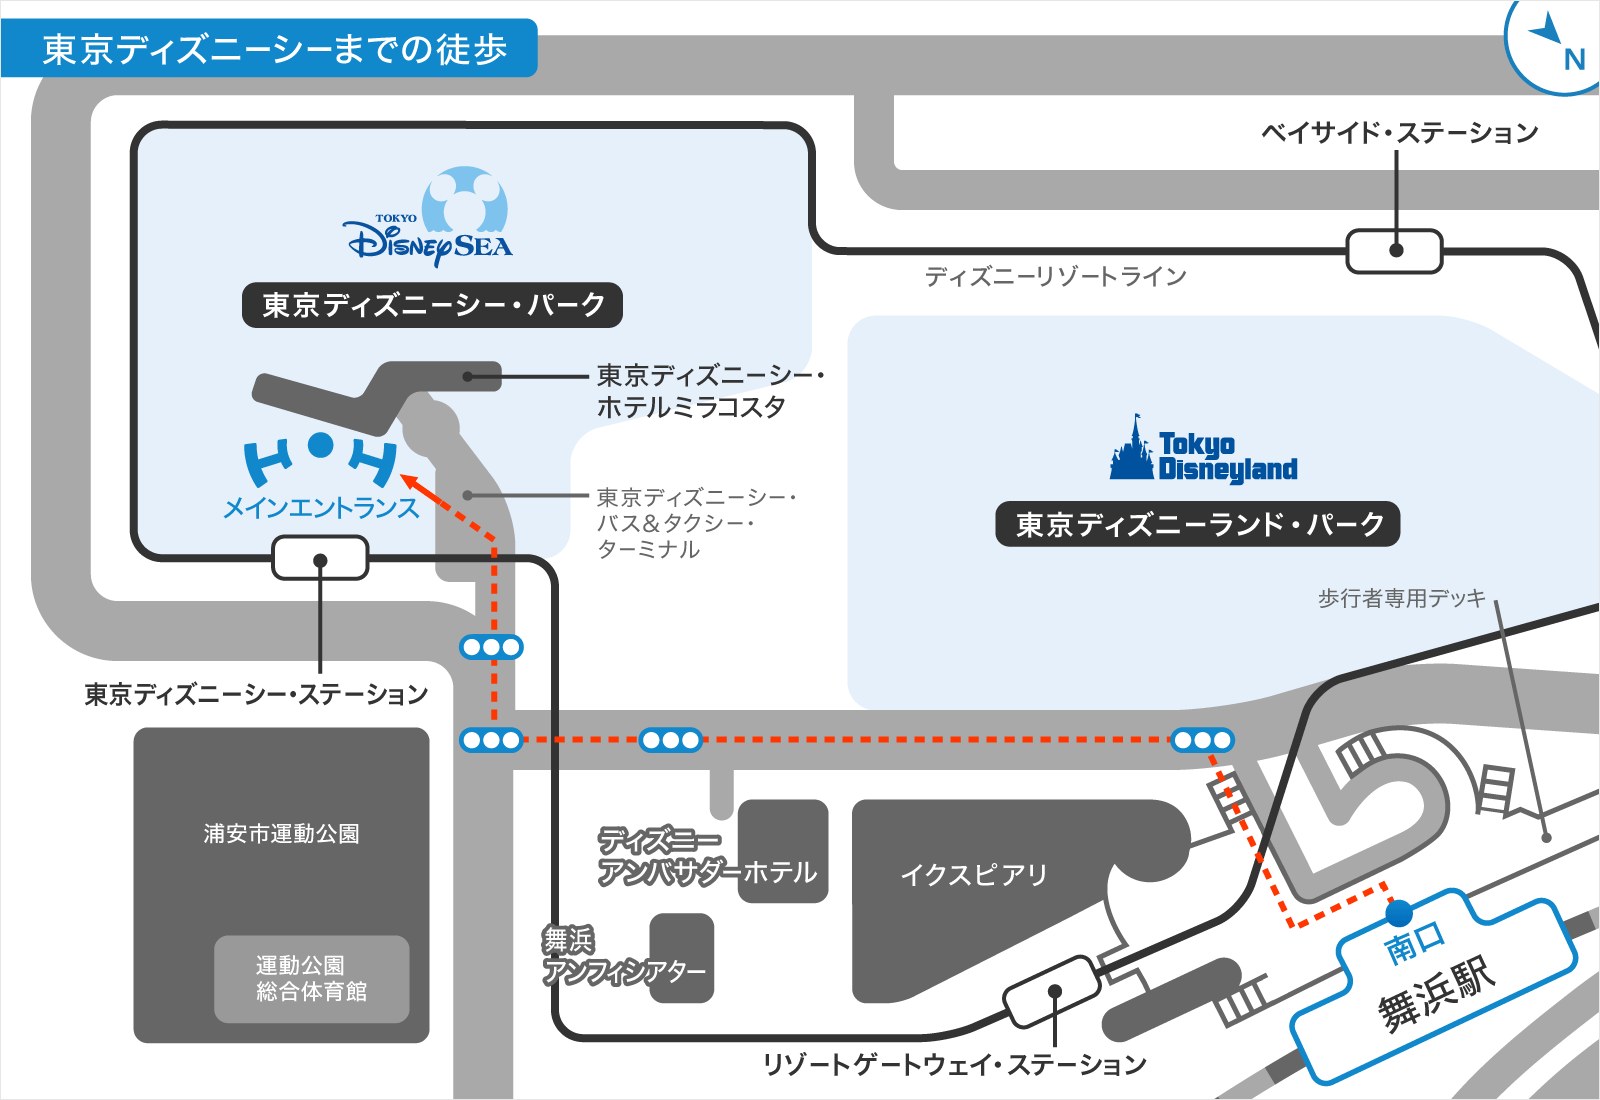 舞浜駅からディズニーシーまでの歩いて行く場合の行き方の地図